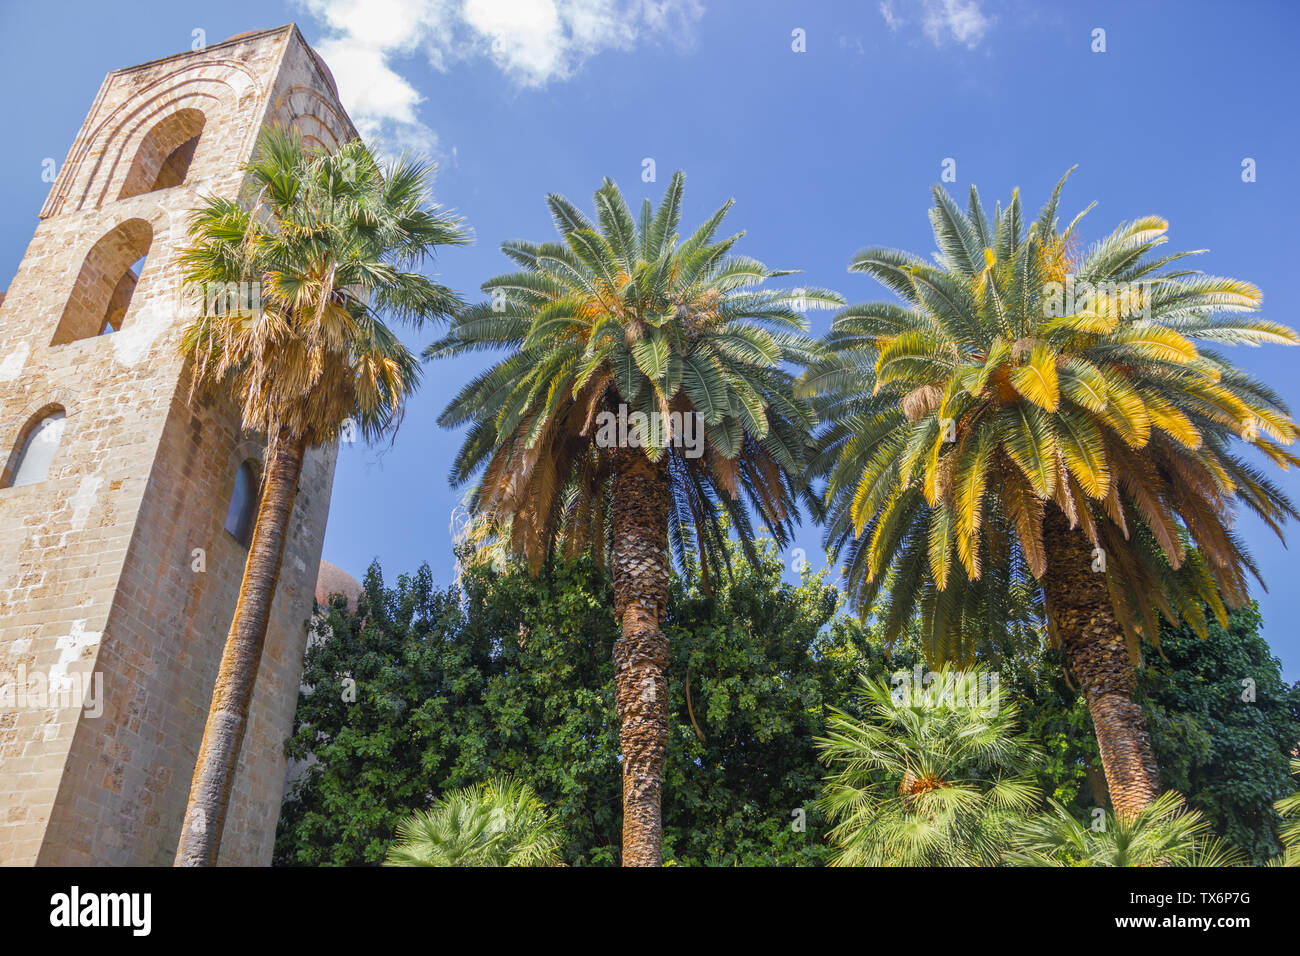 Vista storica del campanile della chiesa di San Giovanni degli Eremiti a Palermo e in Sicilia, con un bellissimo giardino verde e le palme Foto Stock